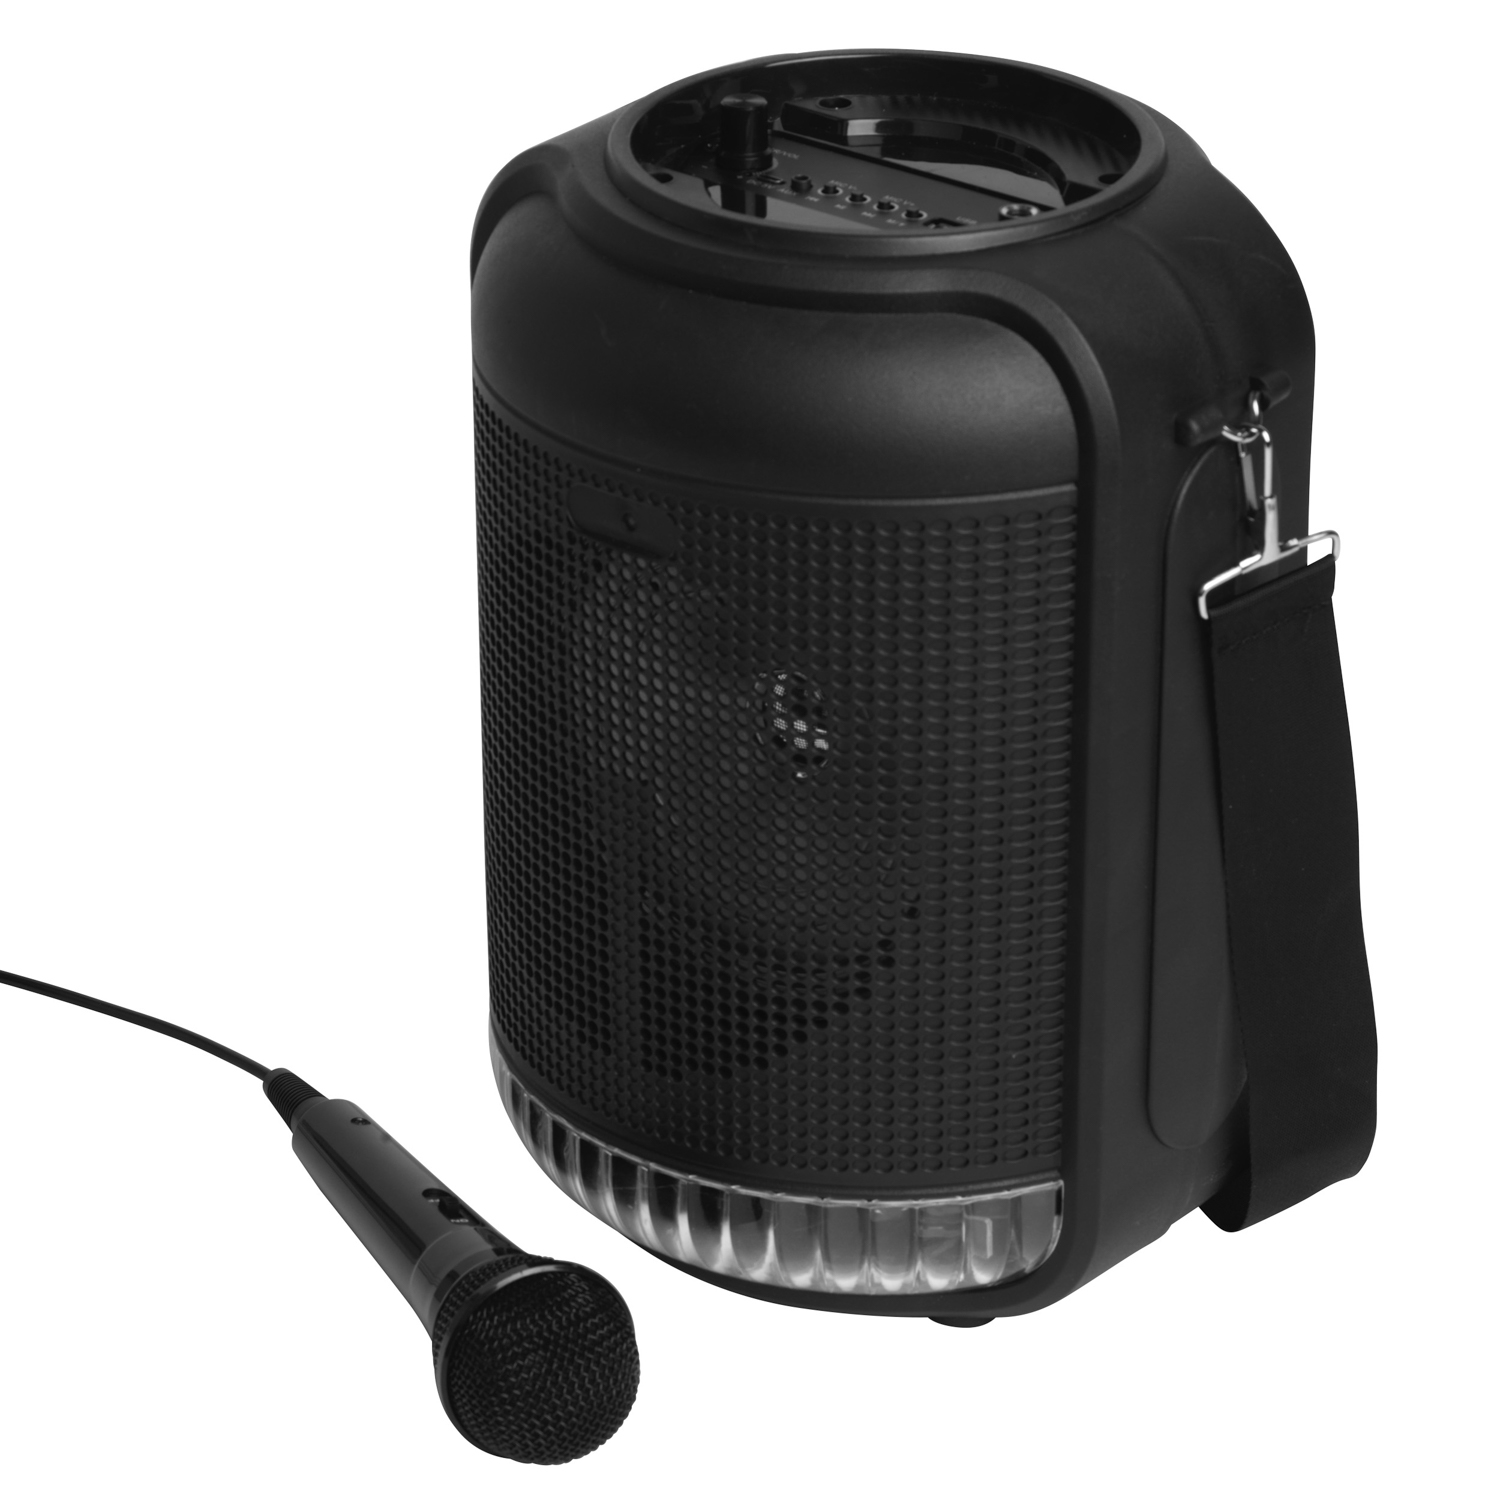 Cassa speaker bluetooth con microfono, luci led e tracolla